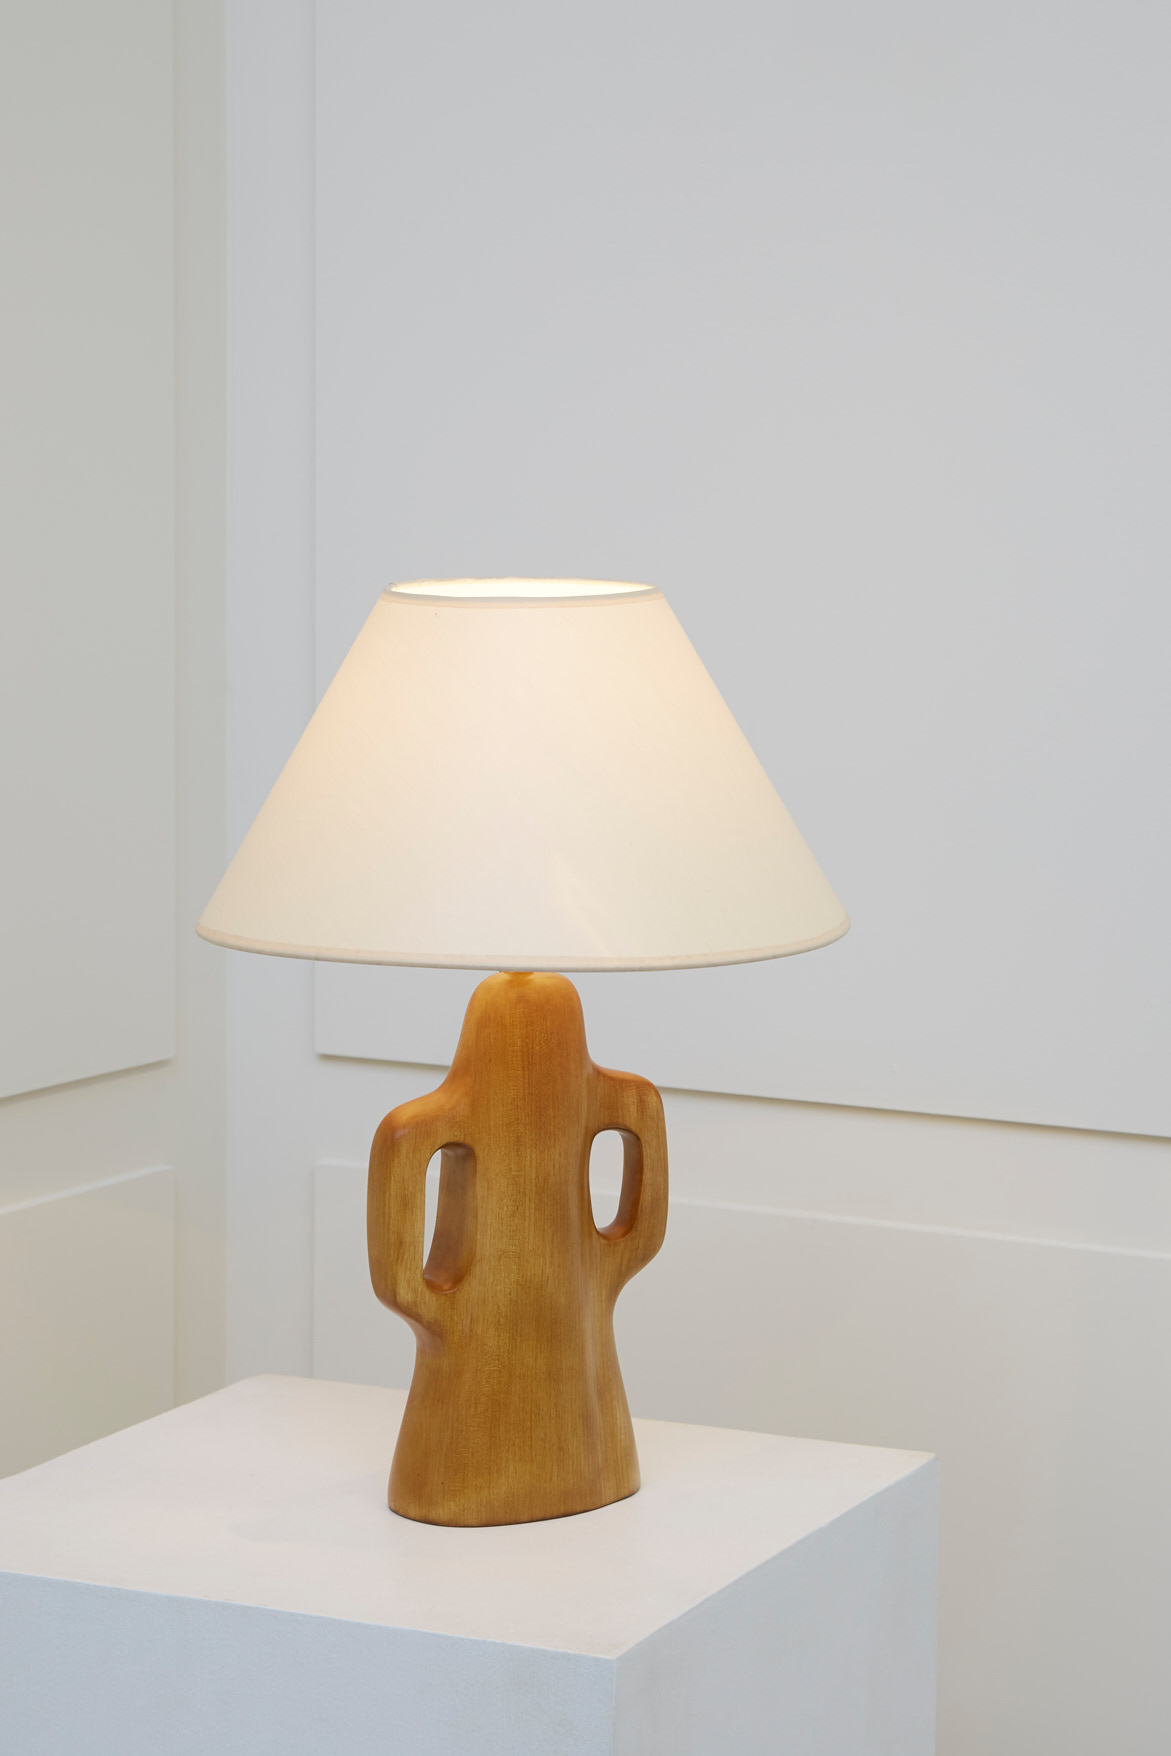 Alexandre Noll, Cherry wood lamp, vue 01